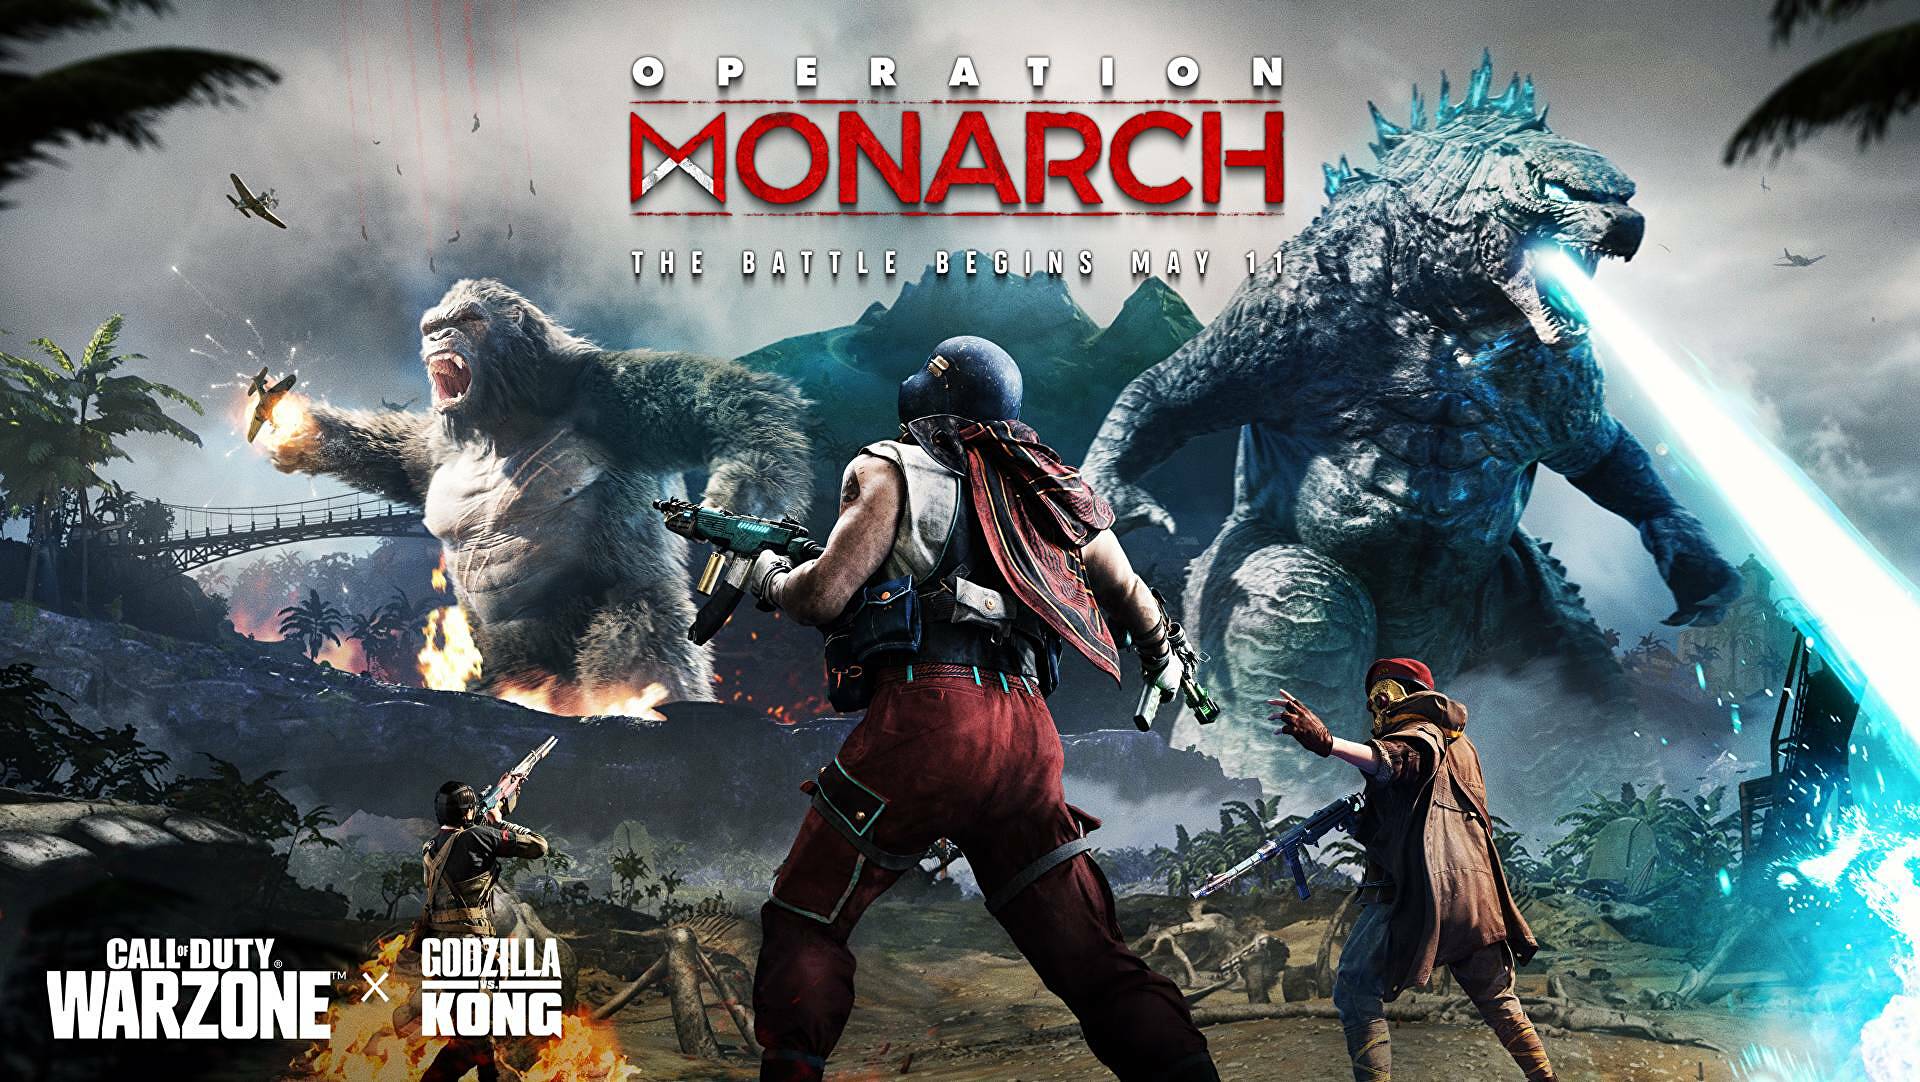 Afbeeldingen van Warzone Godzilla vs Kong event release, bundels en skins in Operation Monarch